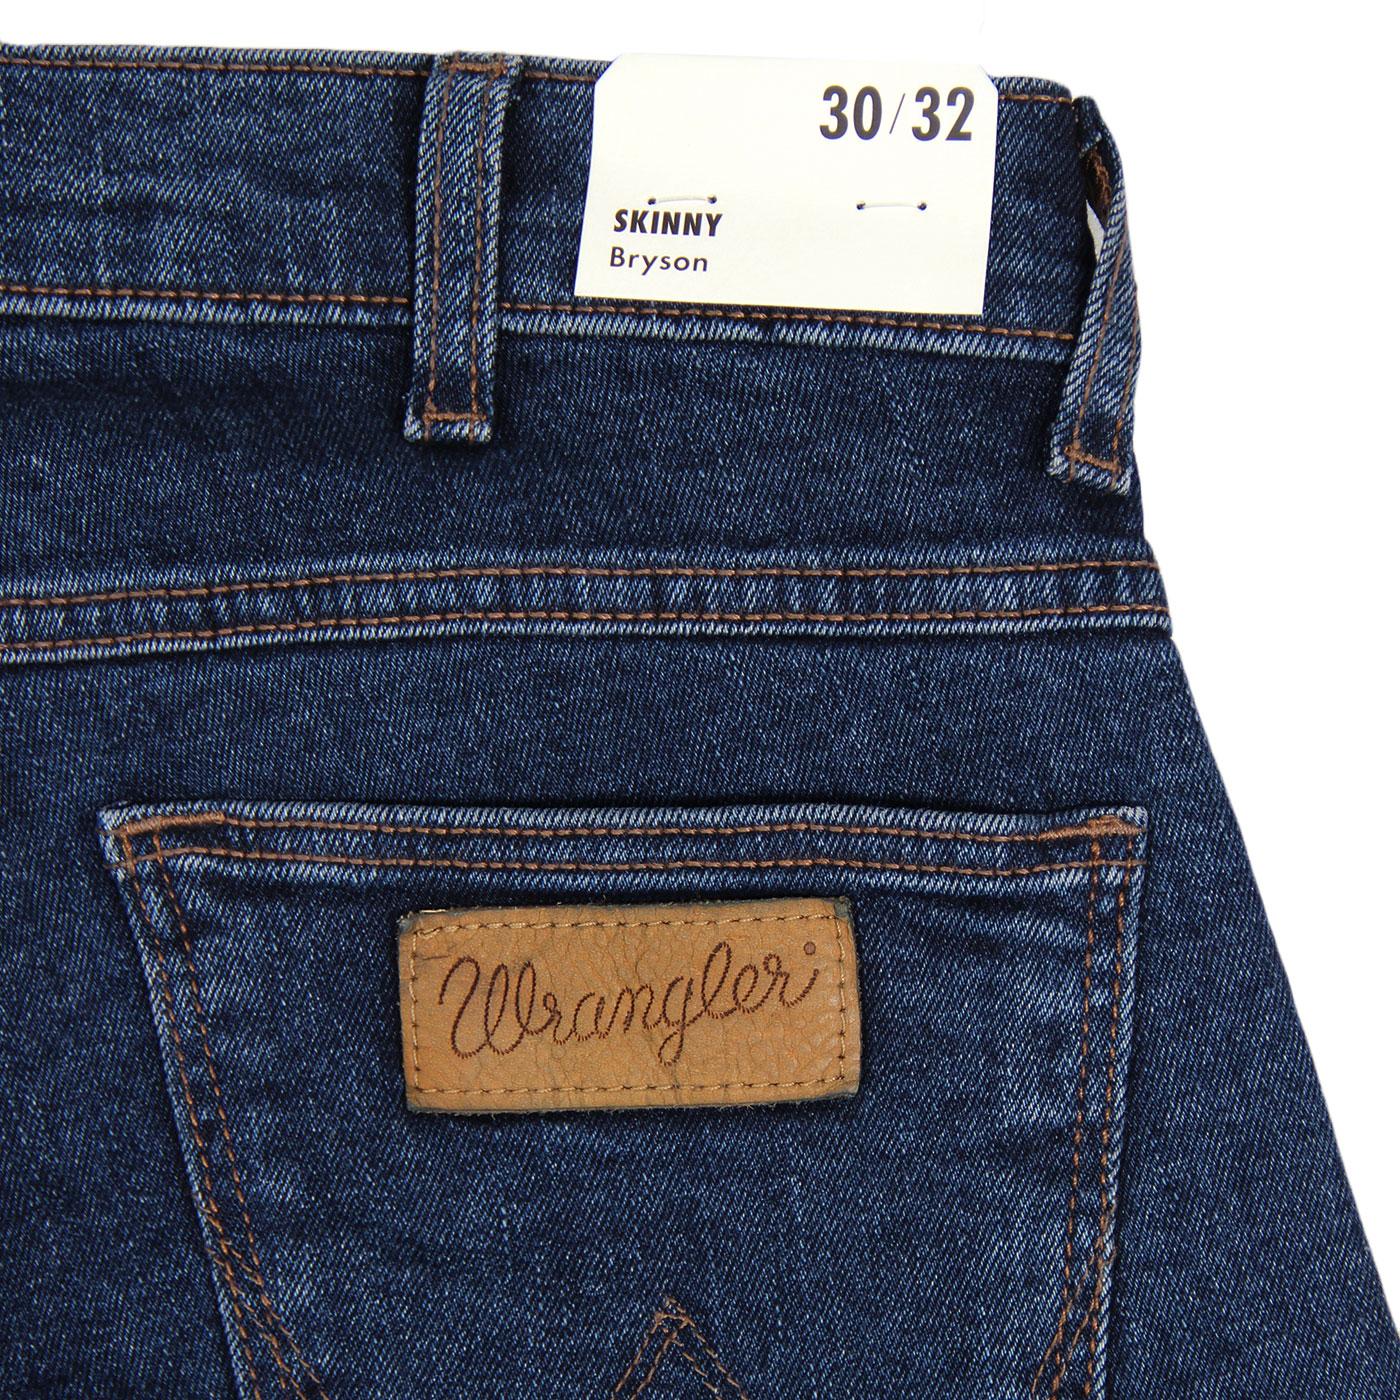 WRANGLER Bryson Retro Skinny Denim Jeans in Flanker Blue